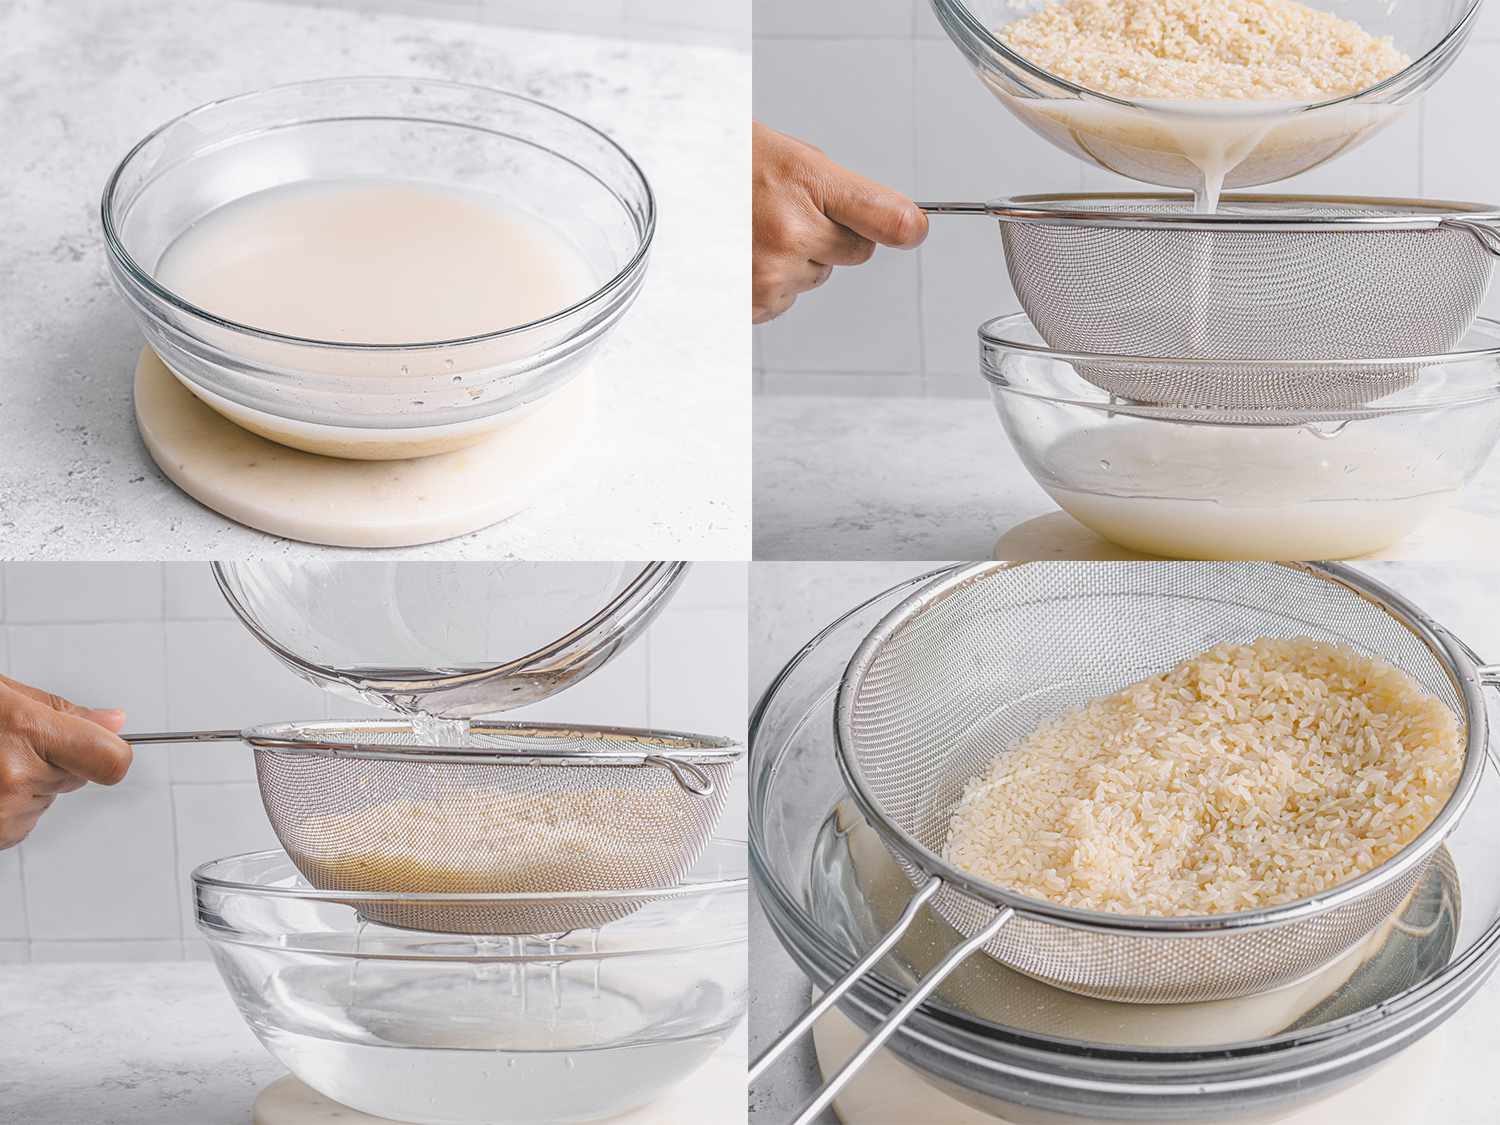 四个图像拼贴。左上:浑浊的水和碗里的米饭。右上:从碗中滤出浑浊的水。左下:清水在过滤器中流过大米。右下:米饭在碗上方的过滤器中